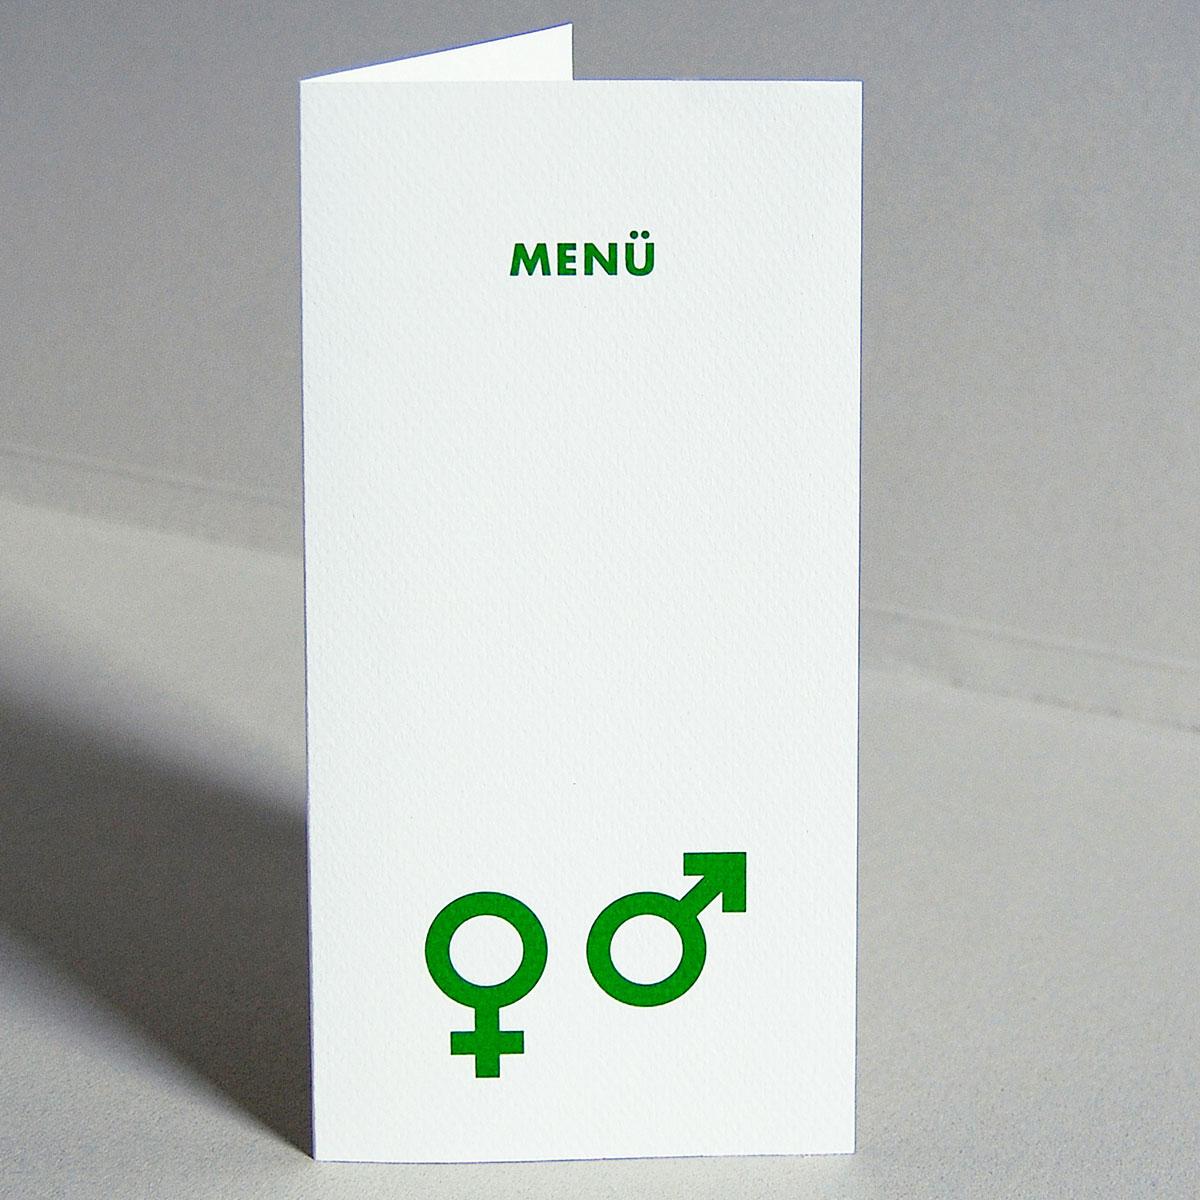 Menükarte: Zeichen für Mann und Frau + MENÜ  (grüner Druck)